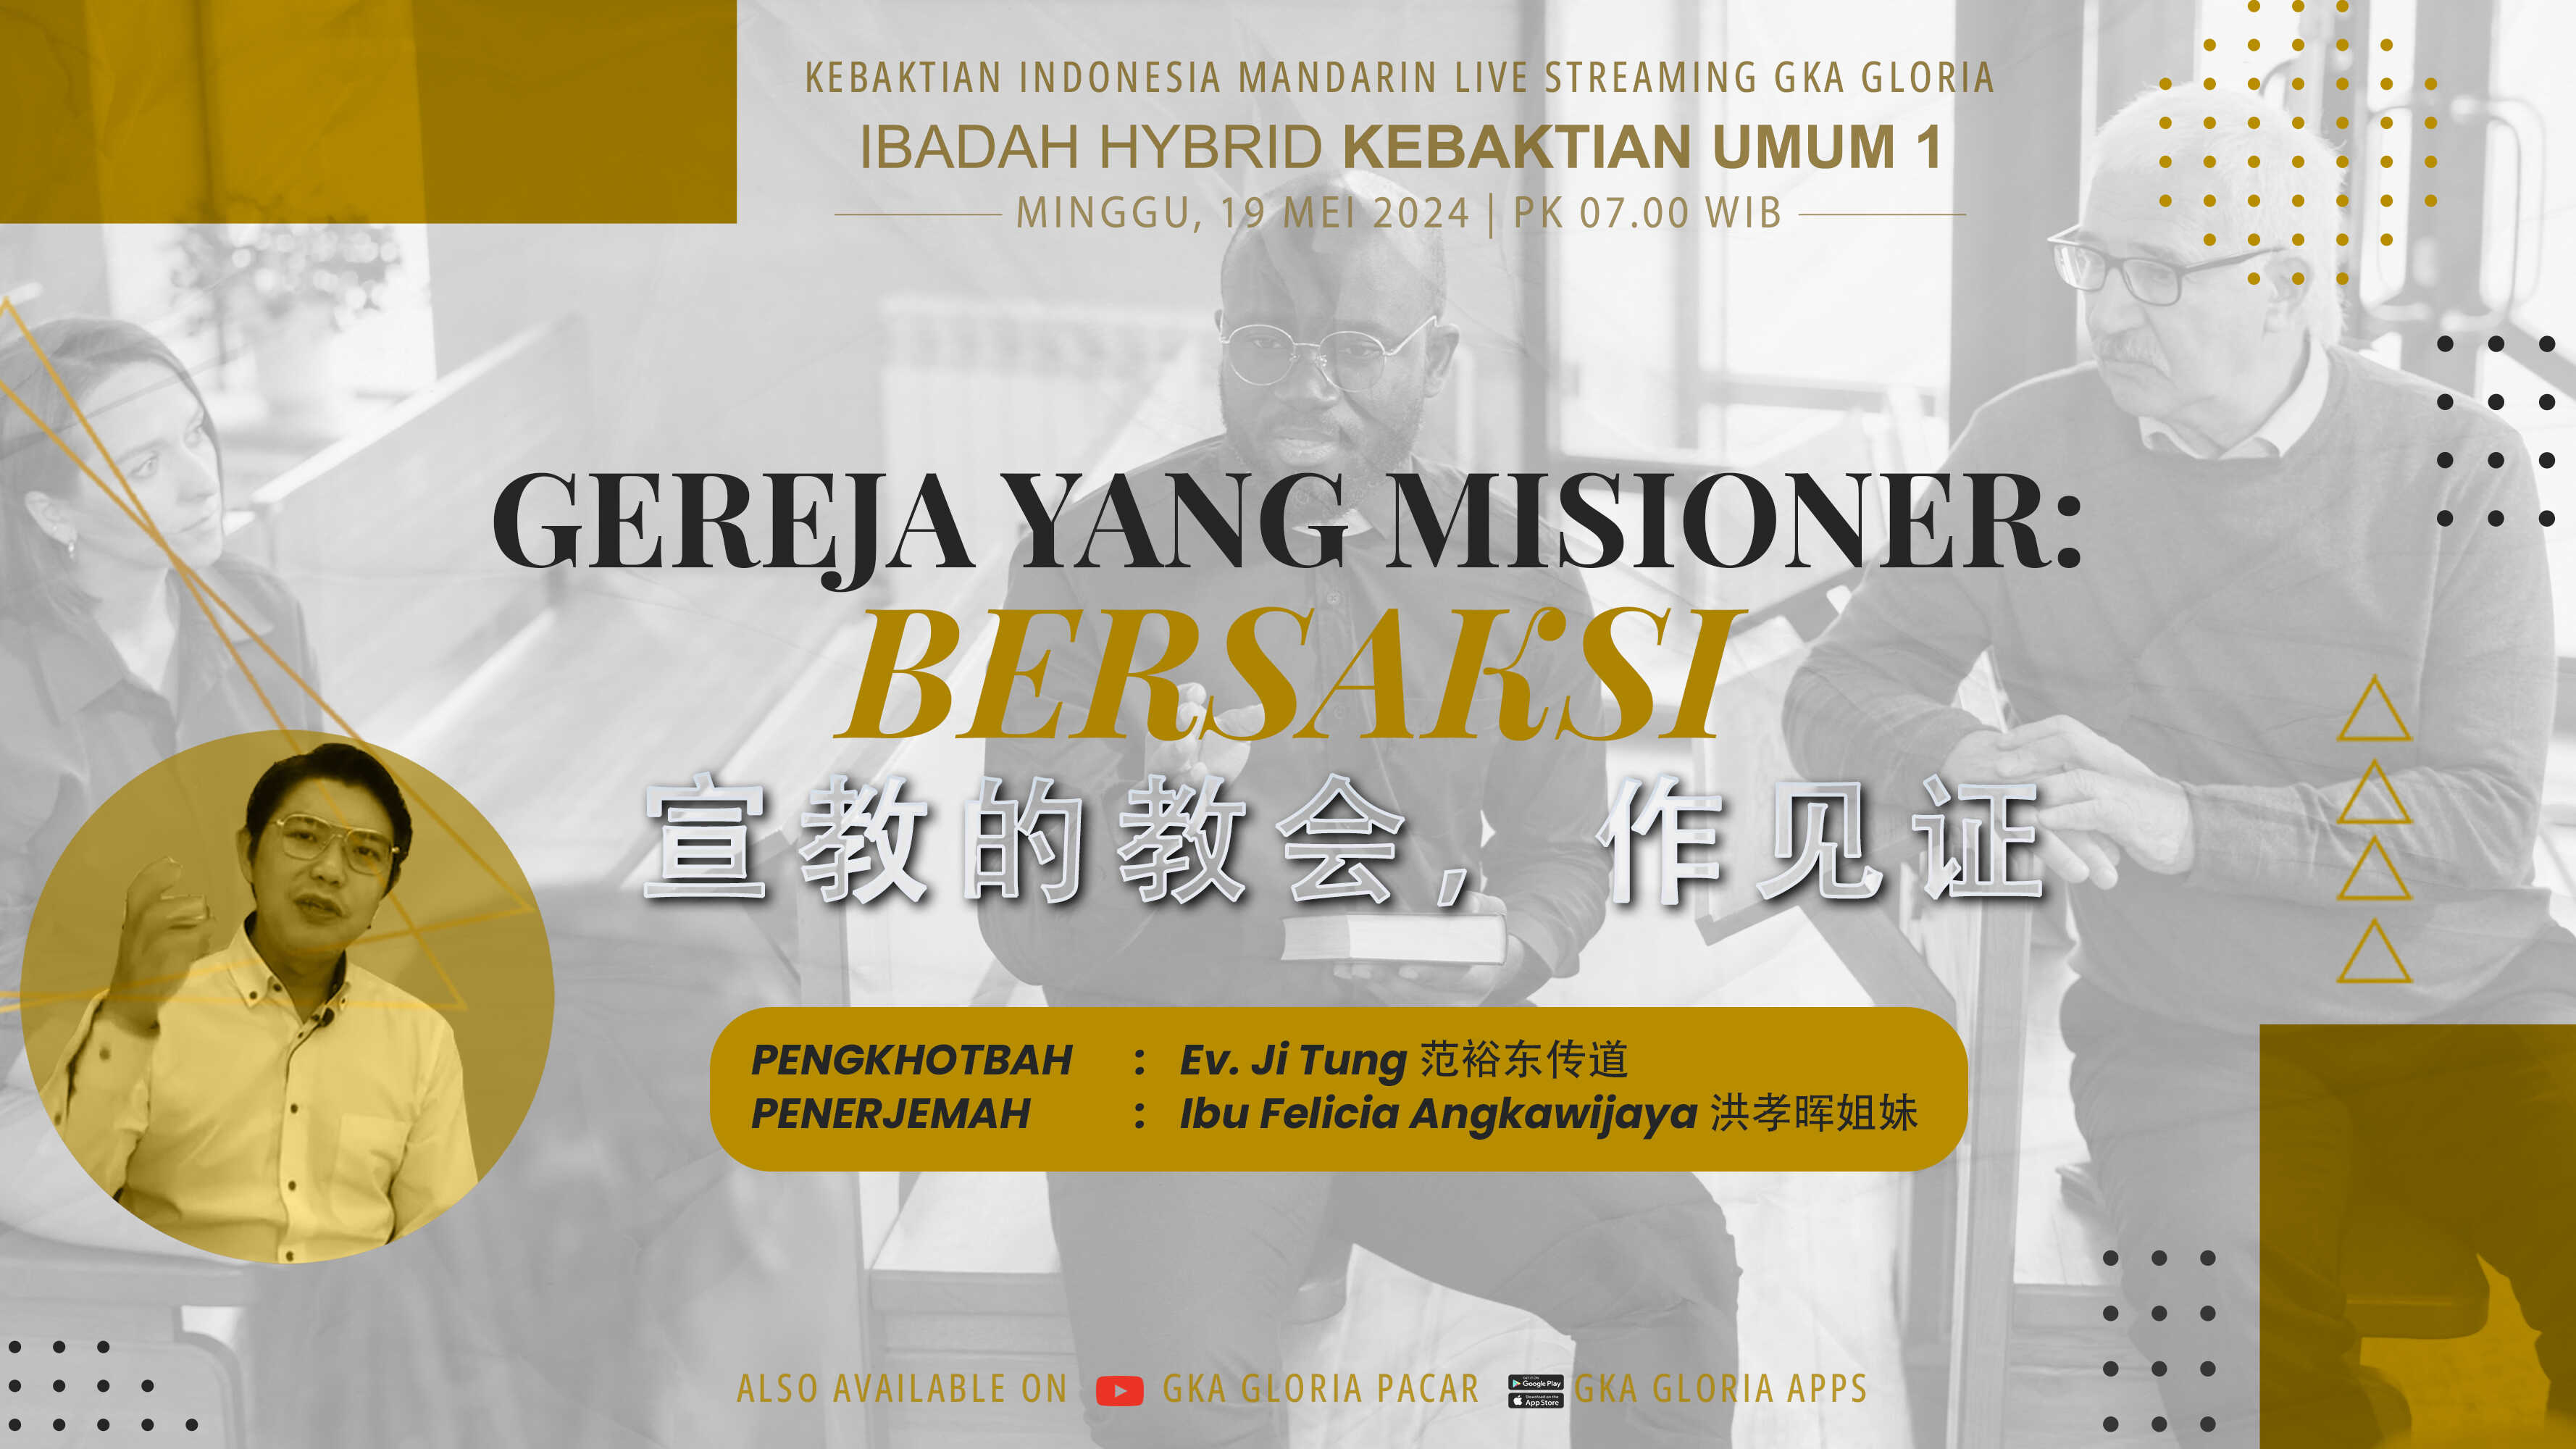 Kebaktian Umum 1 Bilingual Pacar - Gereja Yang Misioner : Bersaksi – Ev. Ji Tung | 06.45 WIB